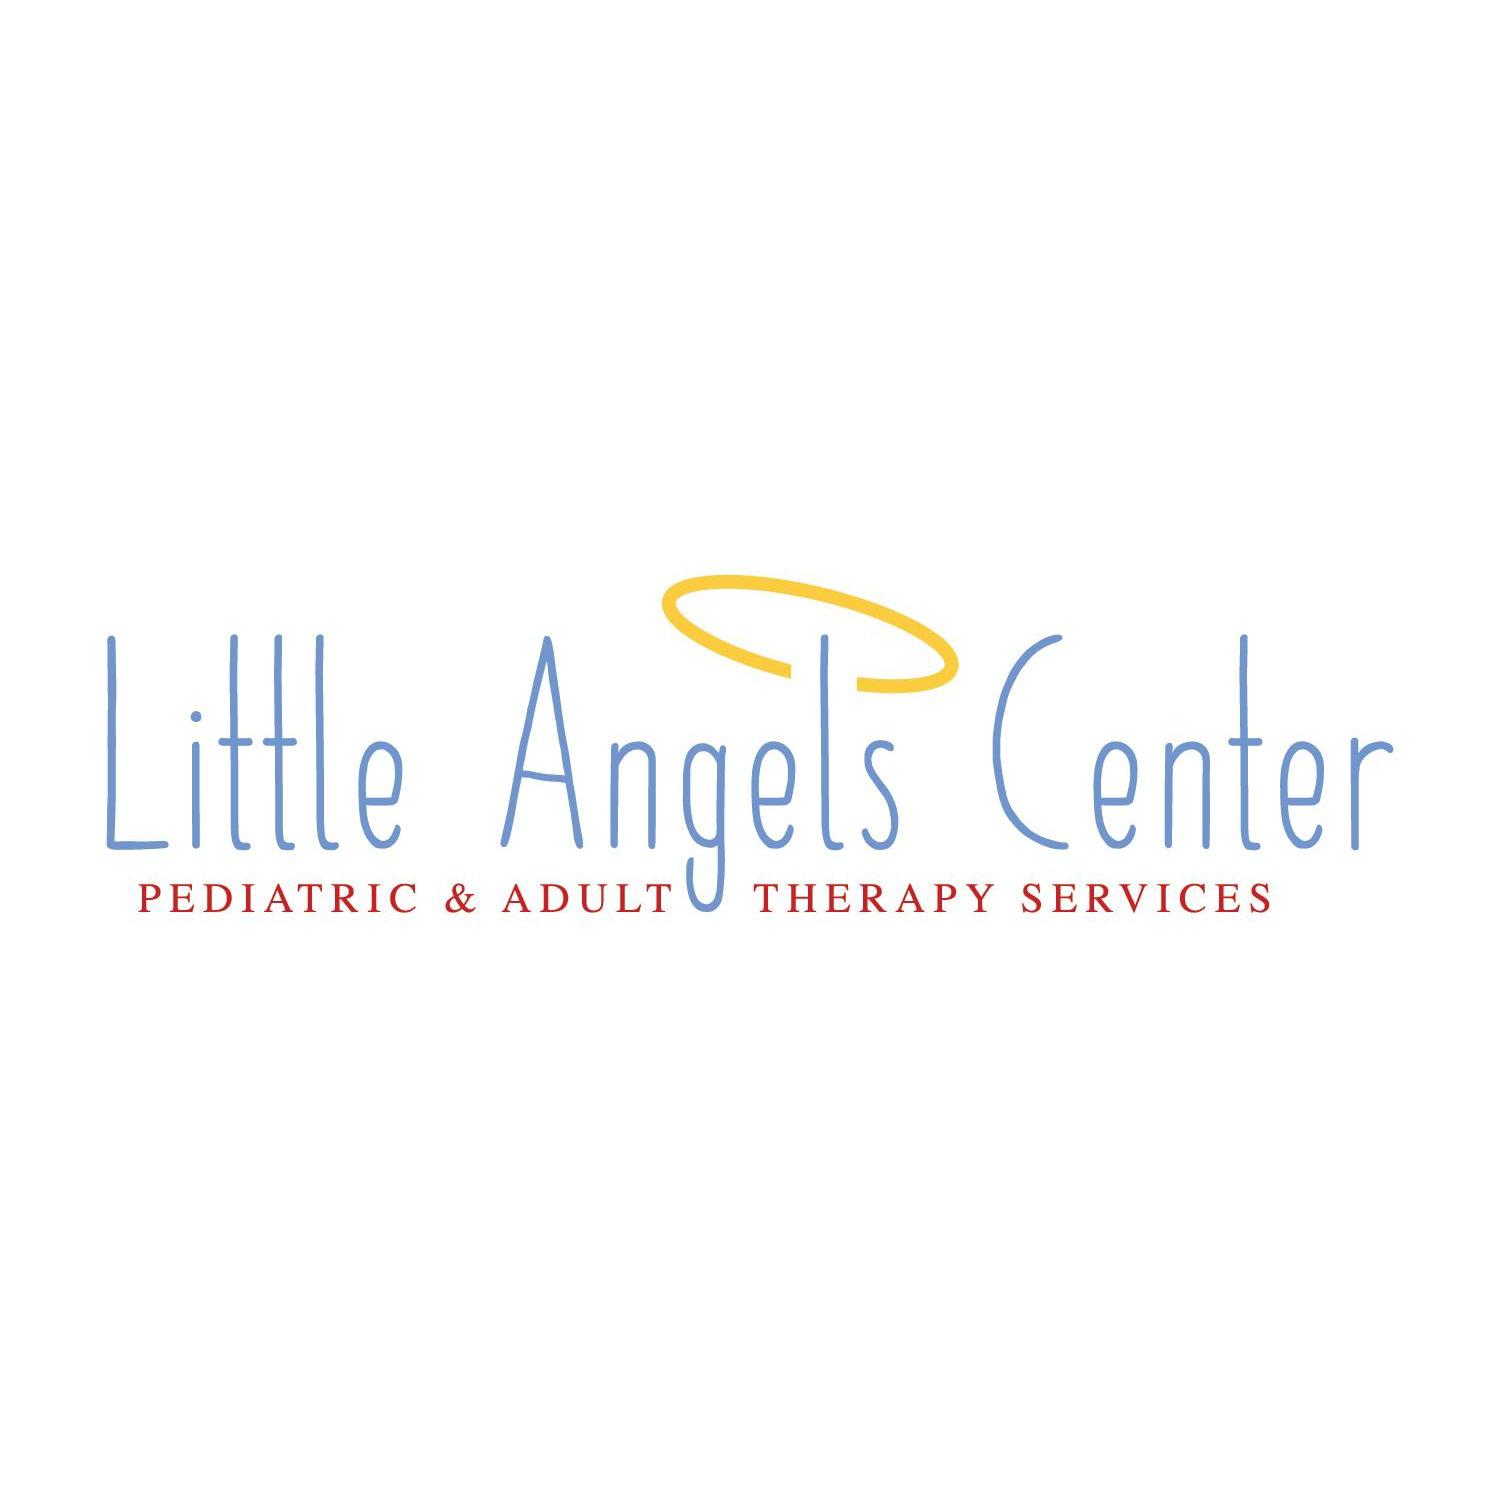 Little Angels Center